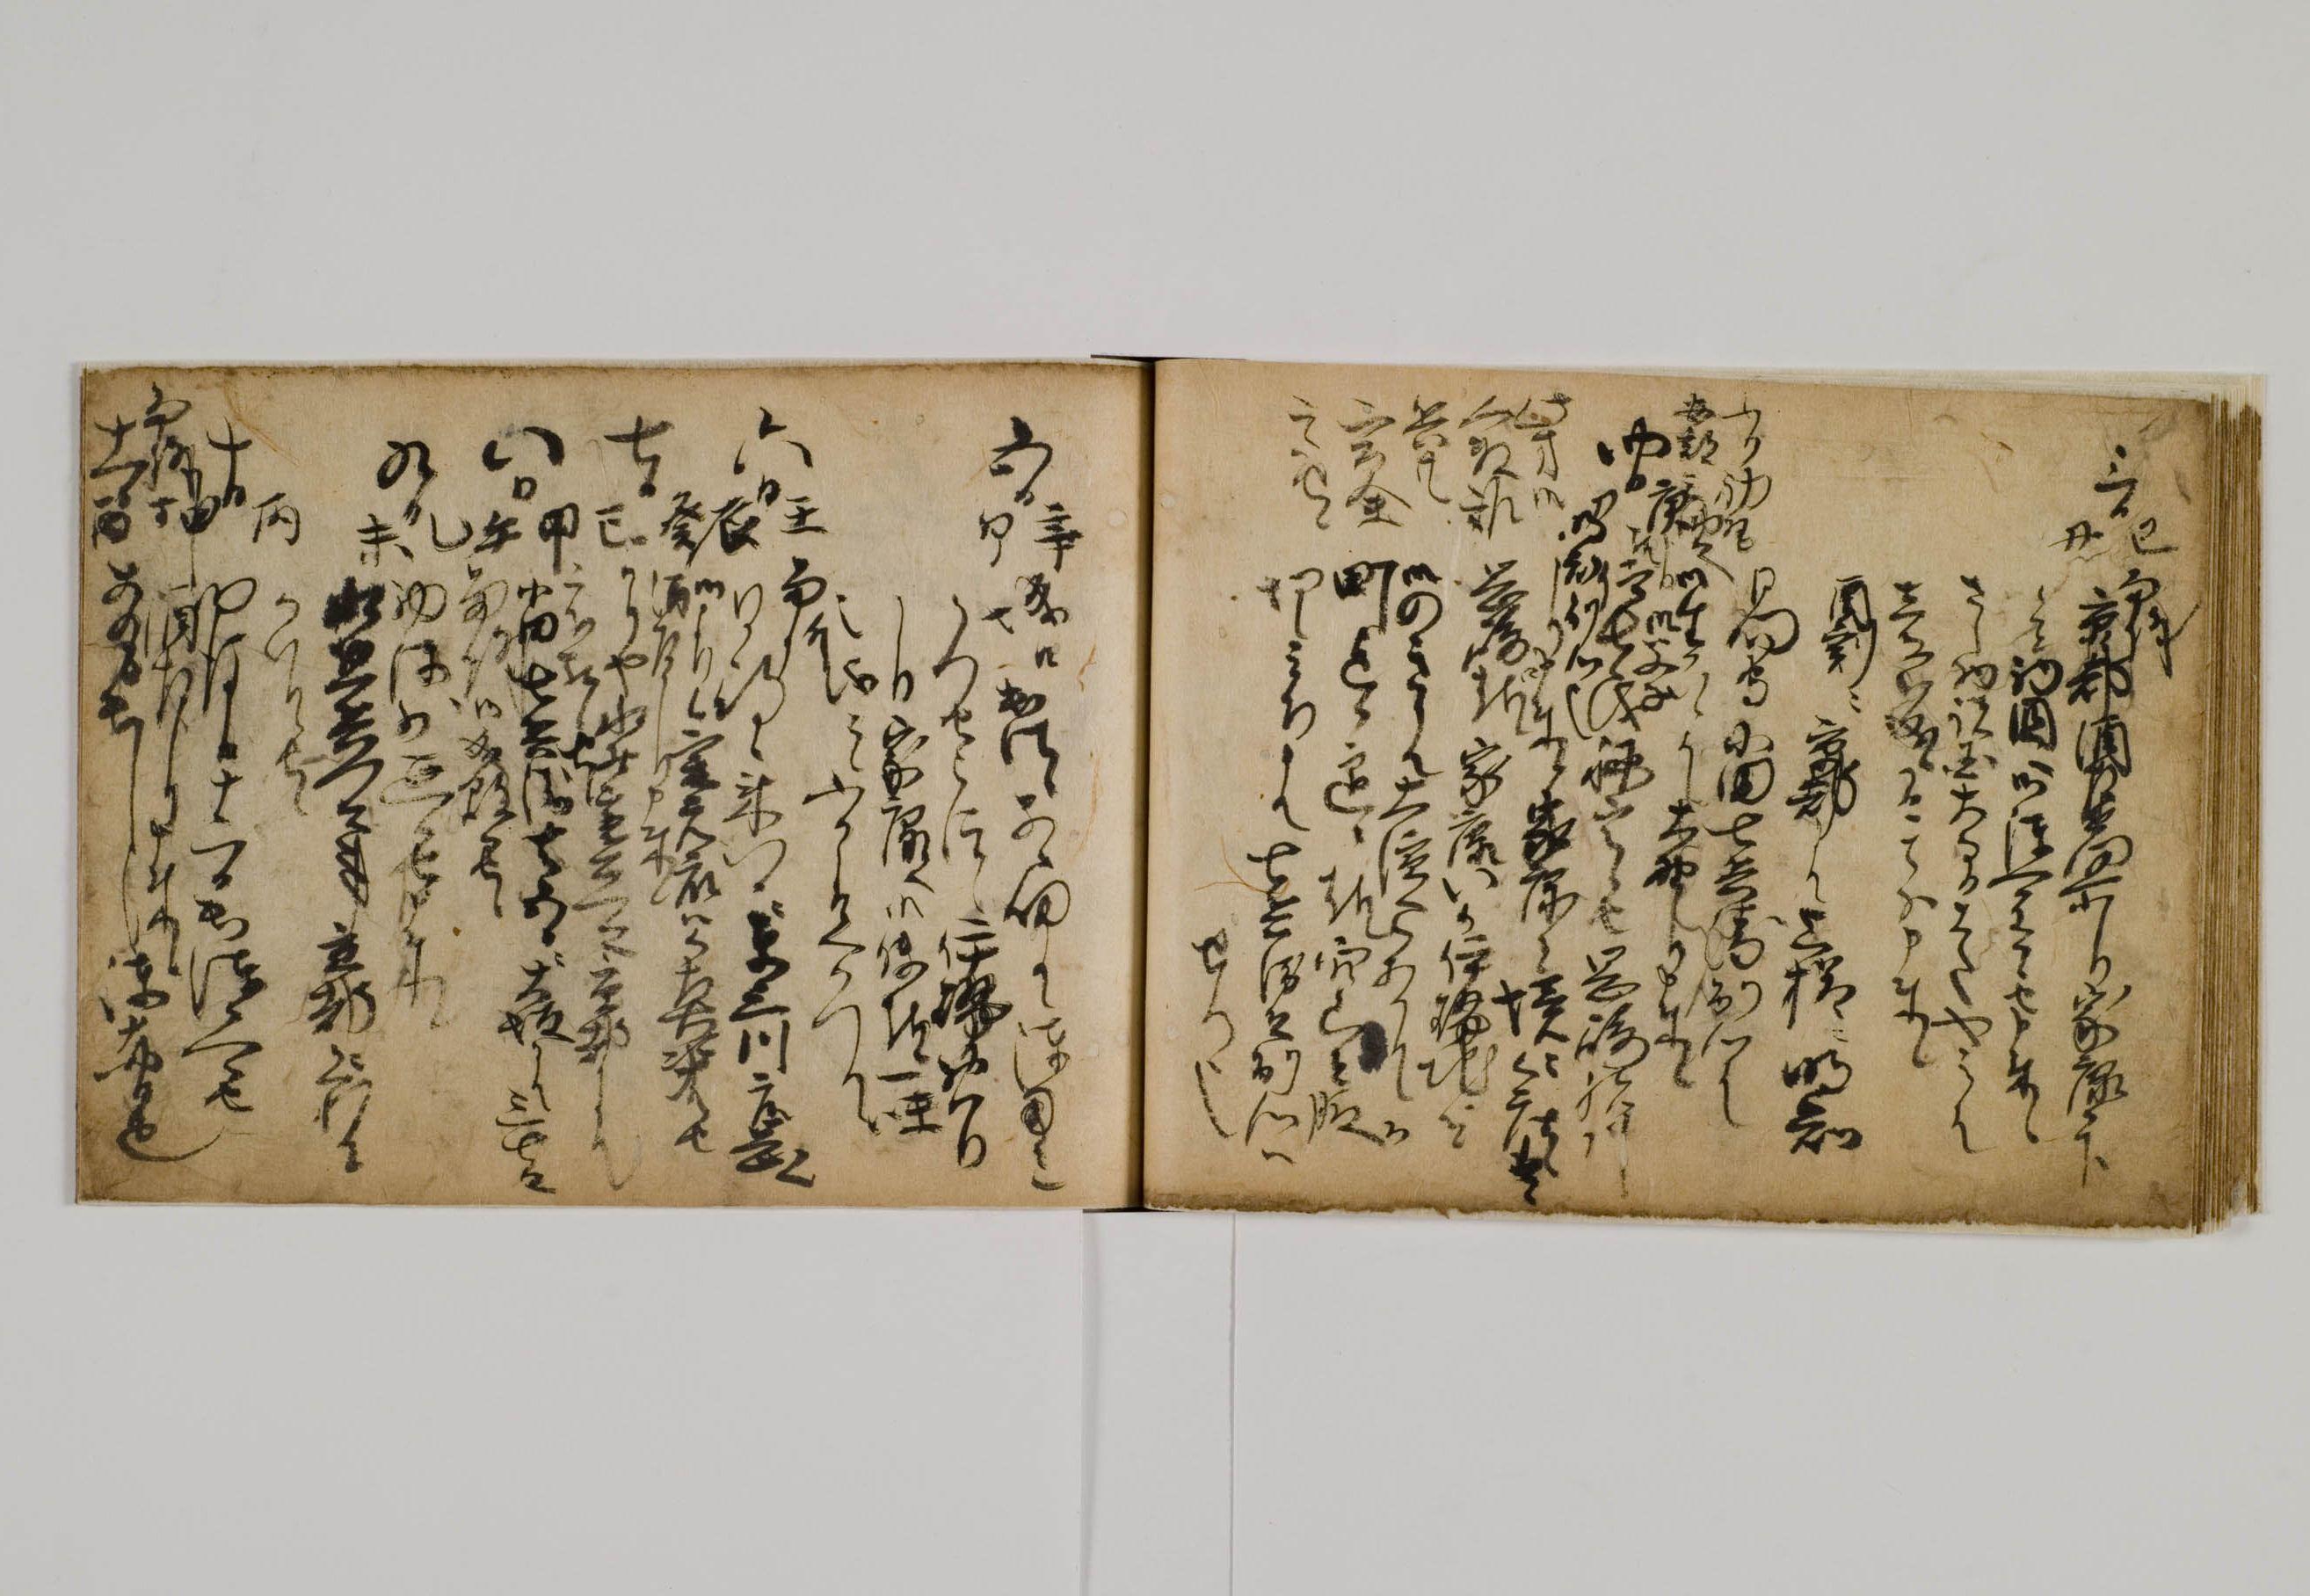 駒澤大学図書館所蔵『松平家忠日記』が国の重要文化財に指定 -- 徳川家康を支えた戦国武将の貴重な自筆日記